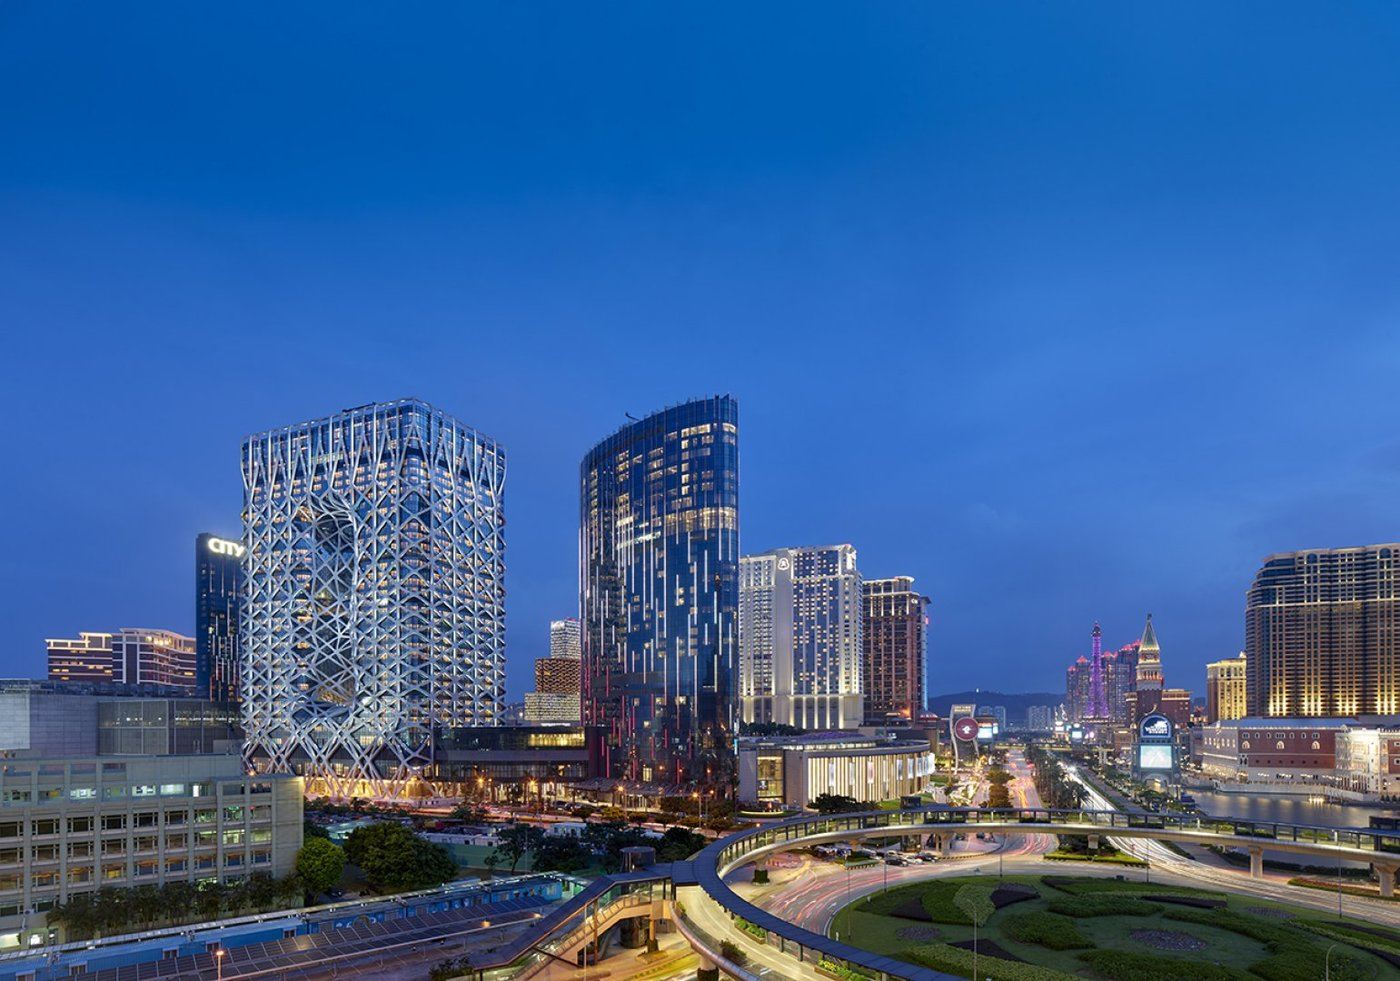 imagen 15 de Morpheus, el hotel más espectacular del mundo está en Macao.